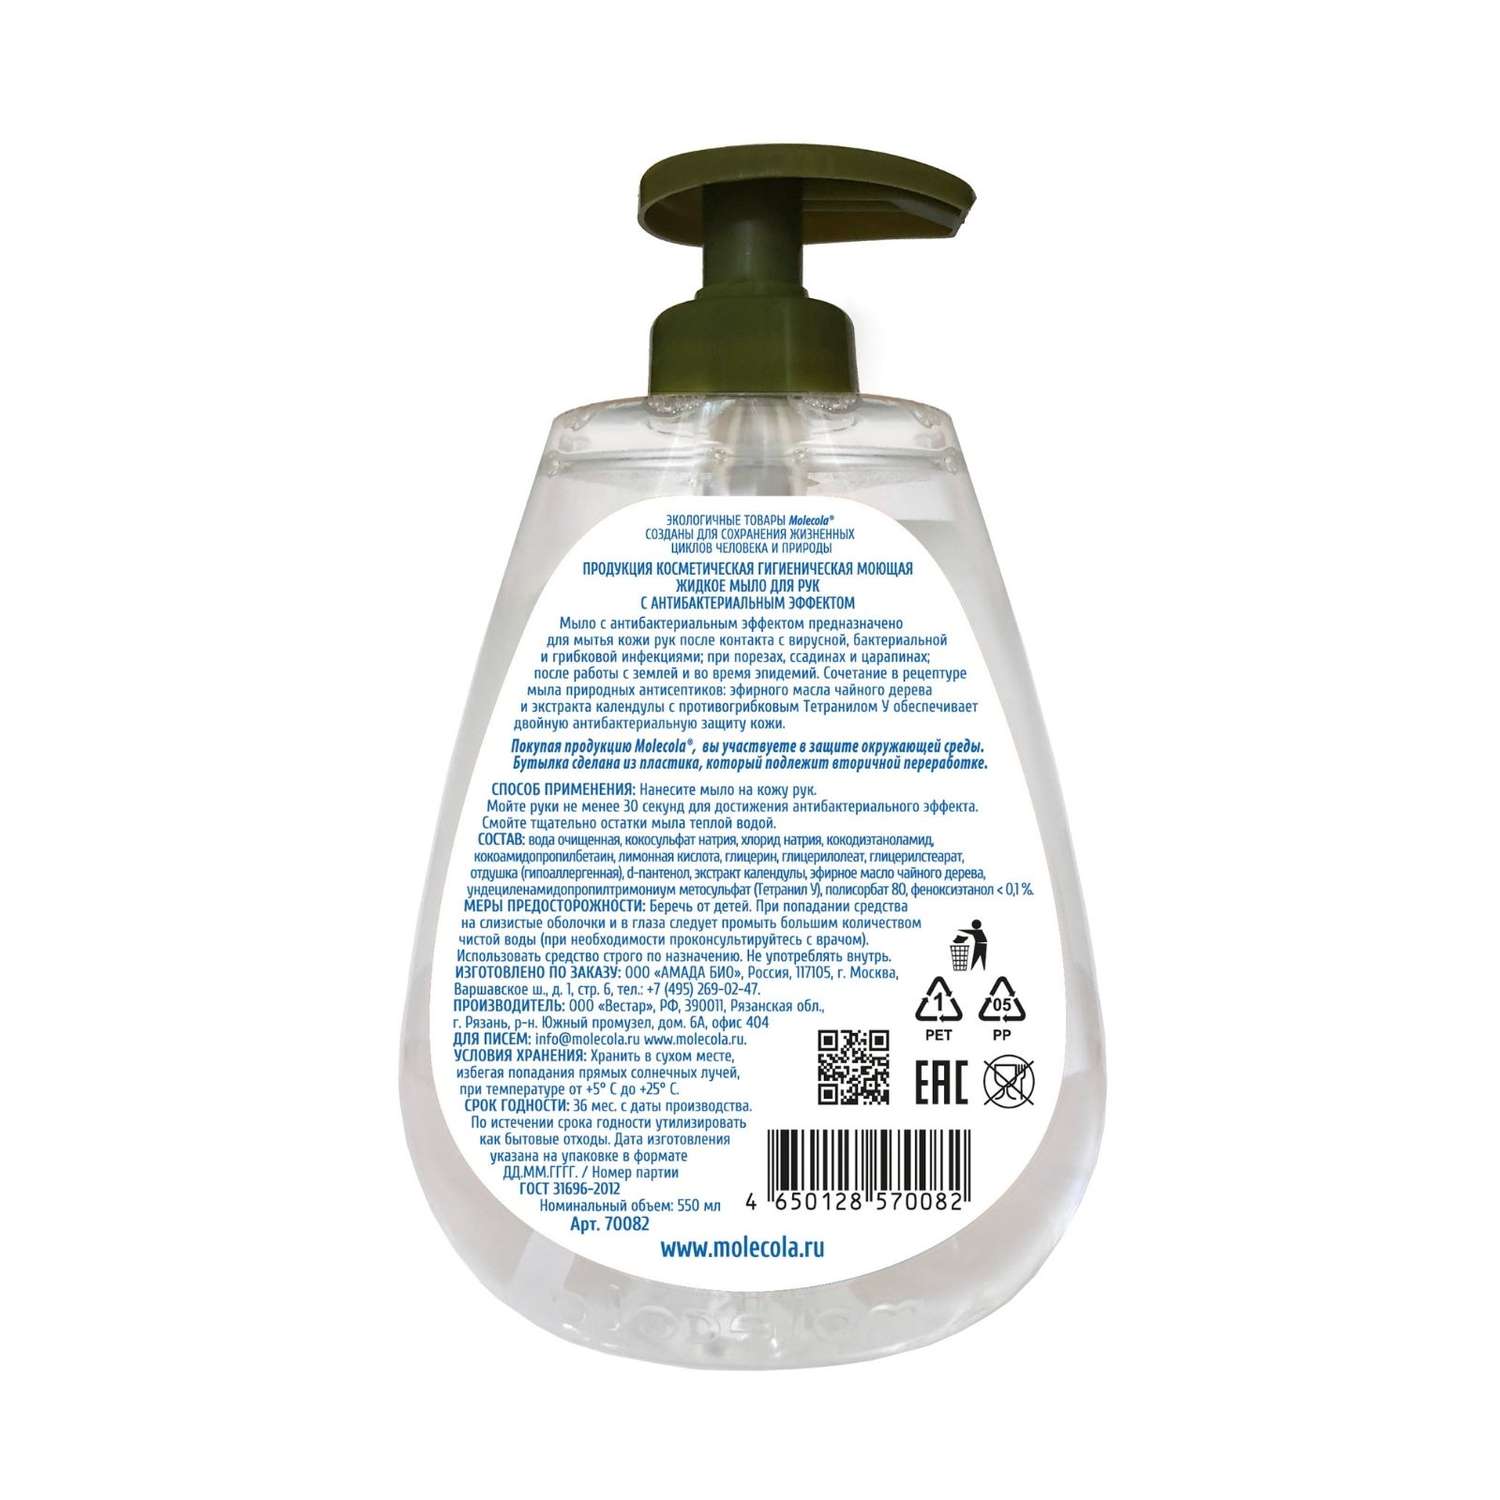 Жидкое мыло для рук Molecola с антибактериальным эффектом 550 мл - фото 2